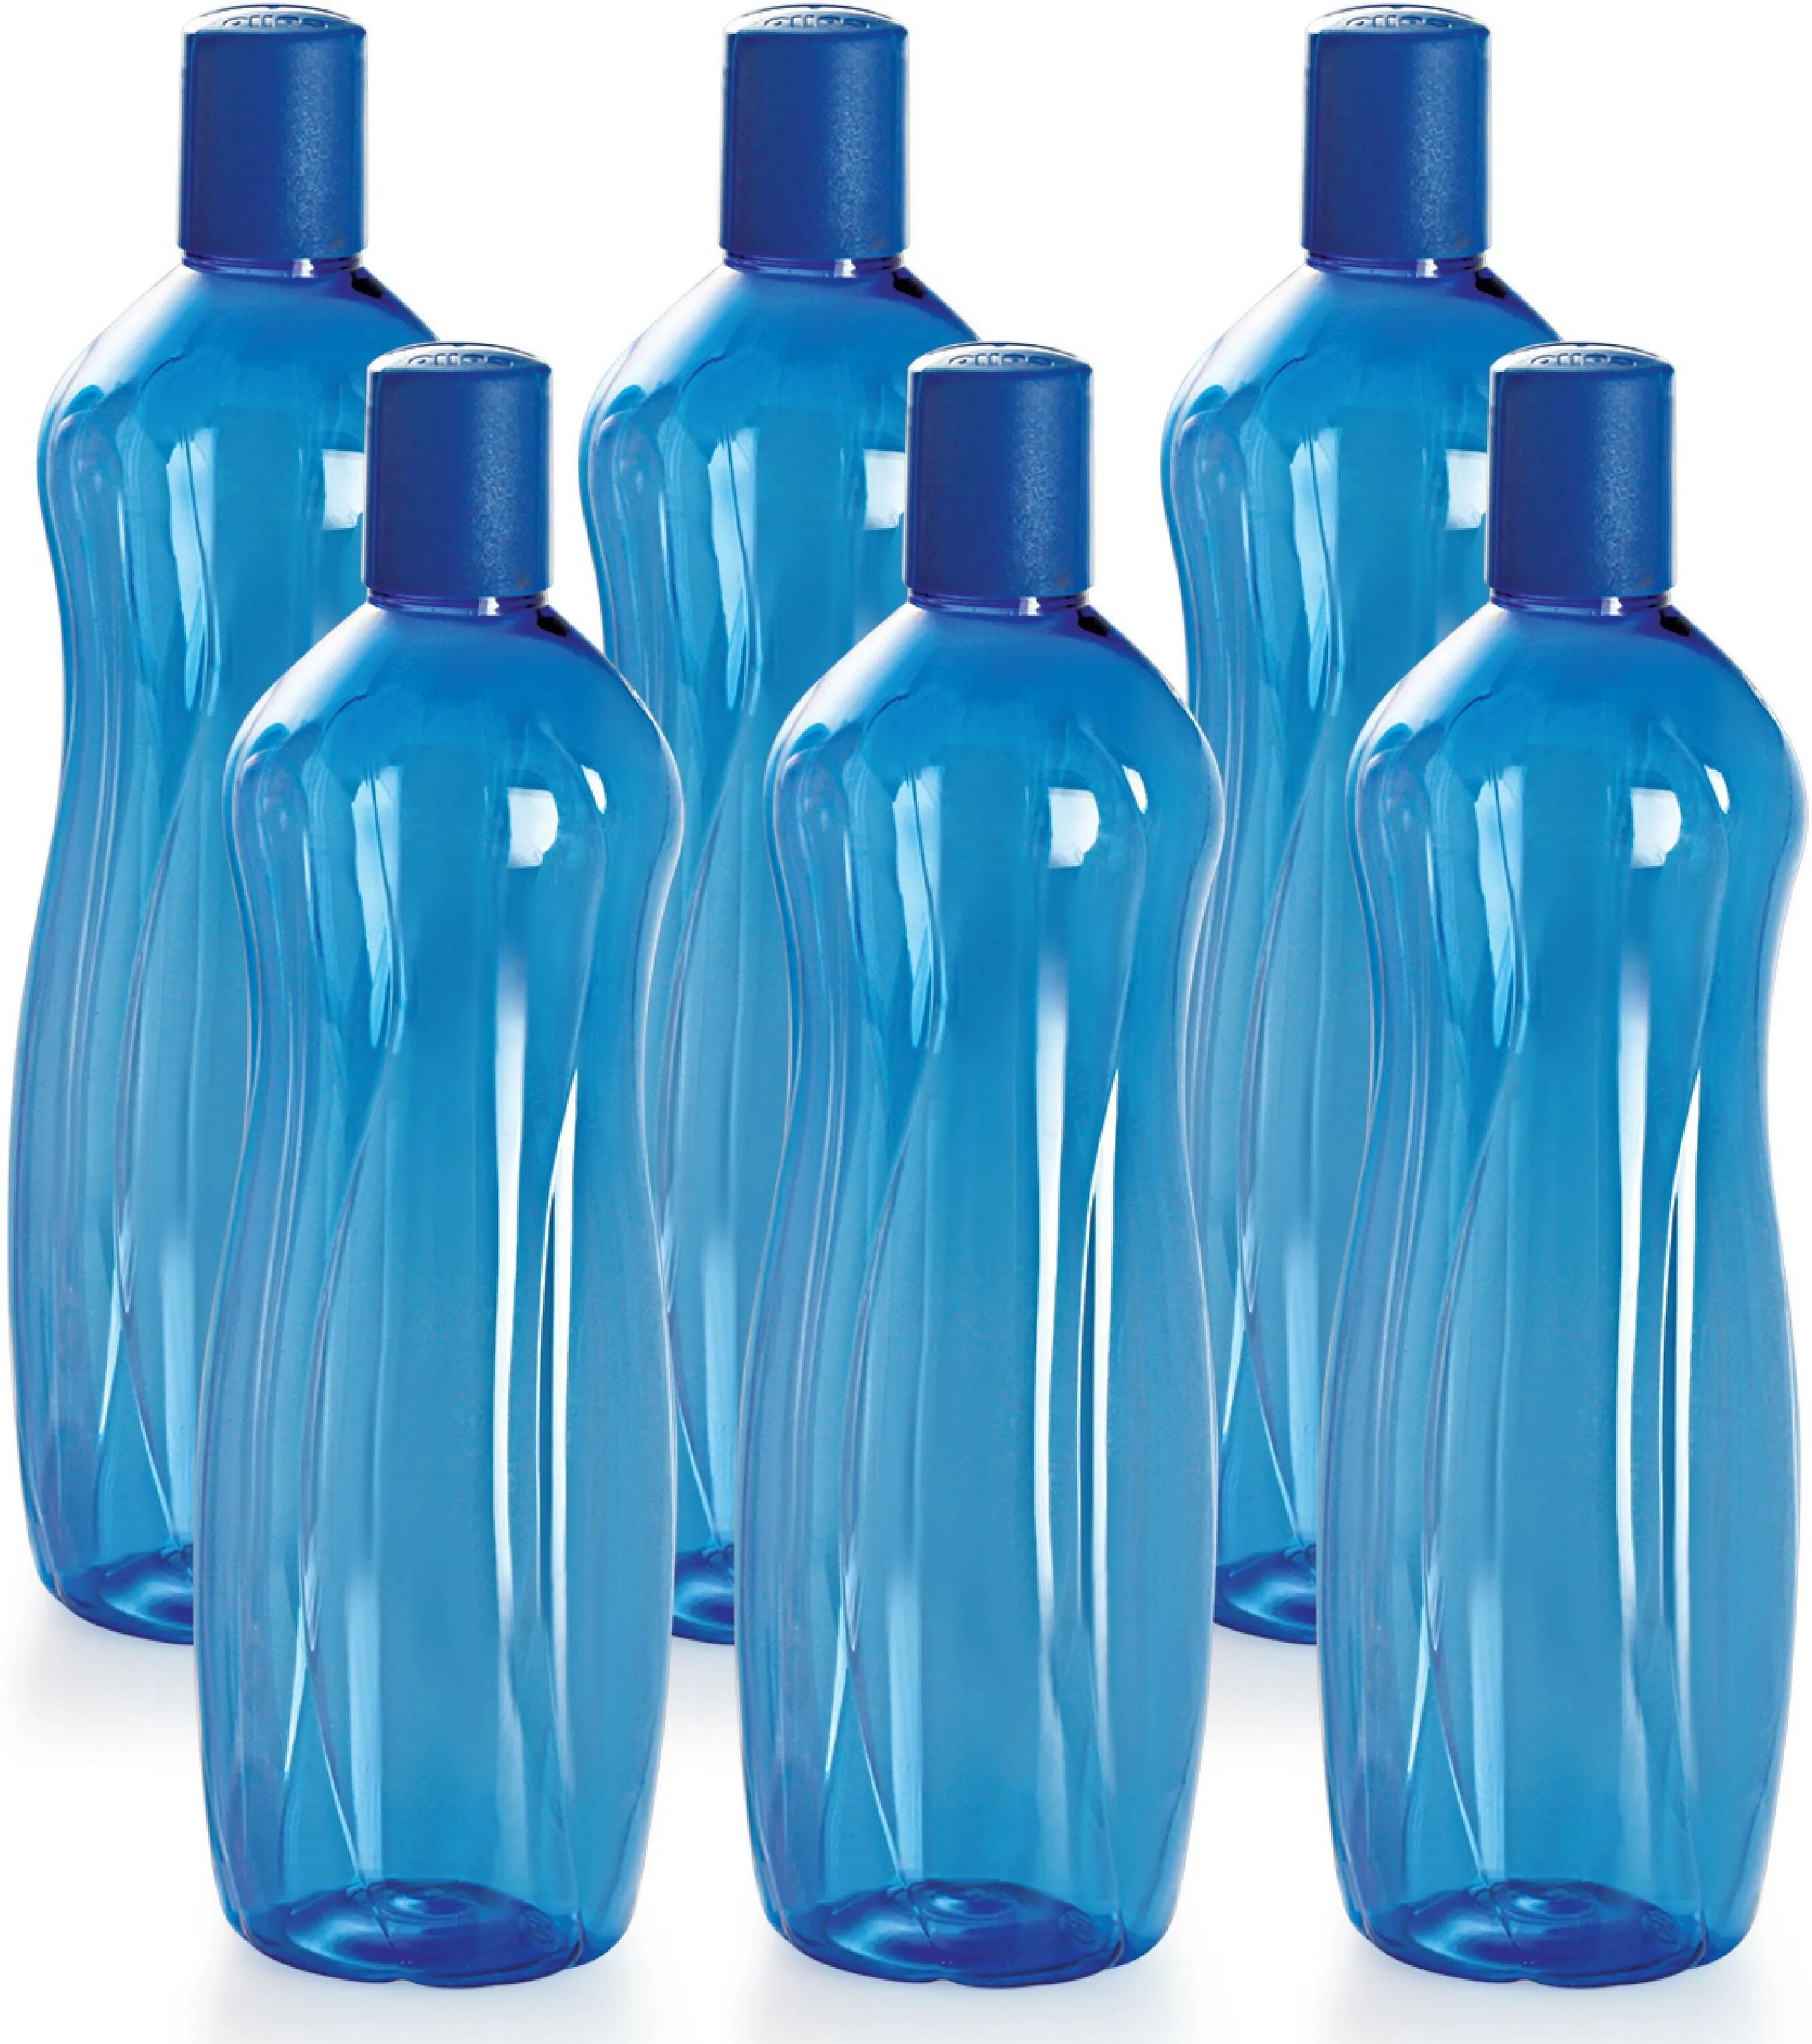 ПЭТ бутылки. Бутылка пластиковая голубая. Pet бутылки. Формы бутылок для воды. Бутылка для воды 1 литр